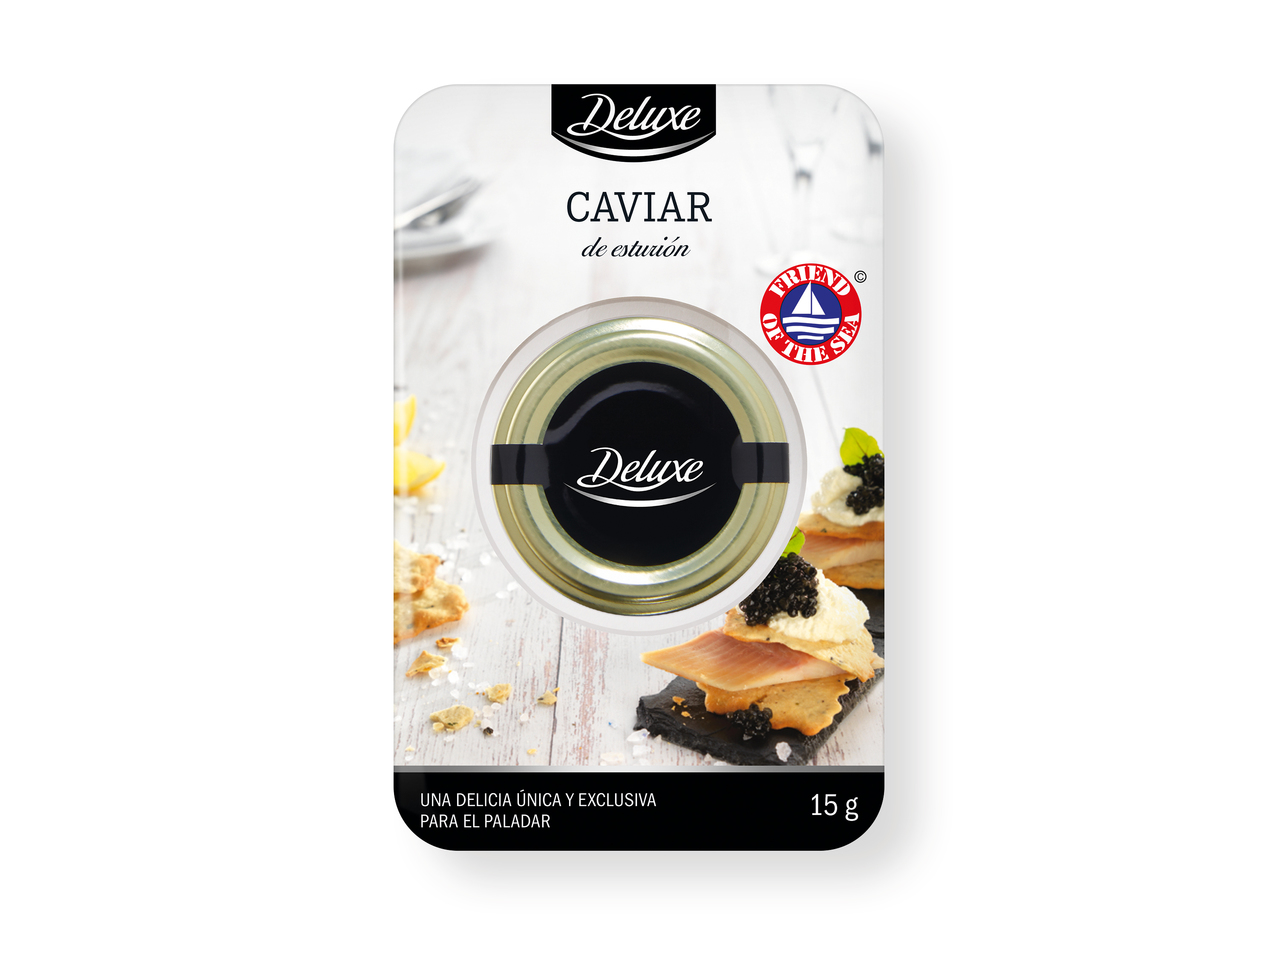 'Deluxe(R)' Caviar de esturión